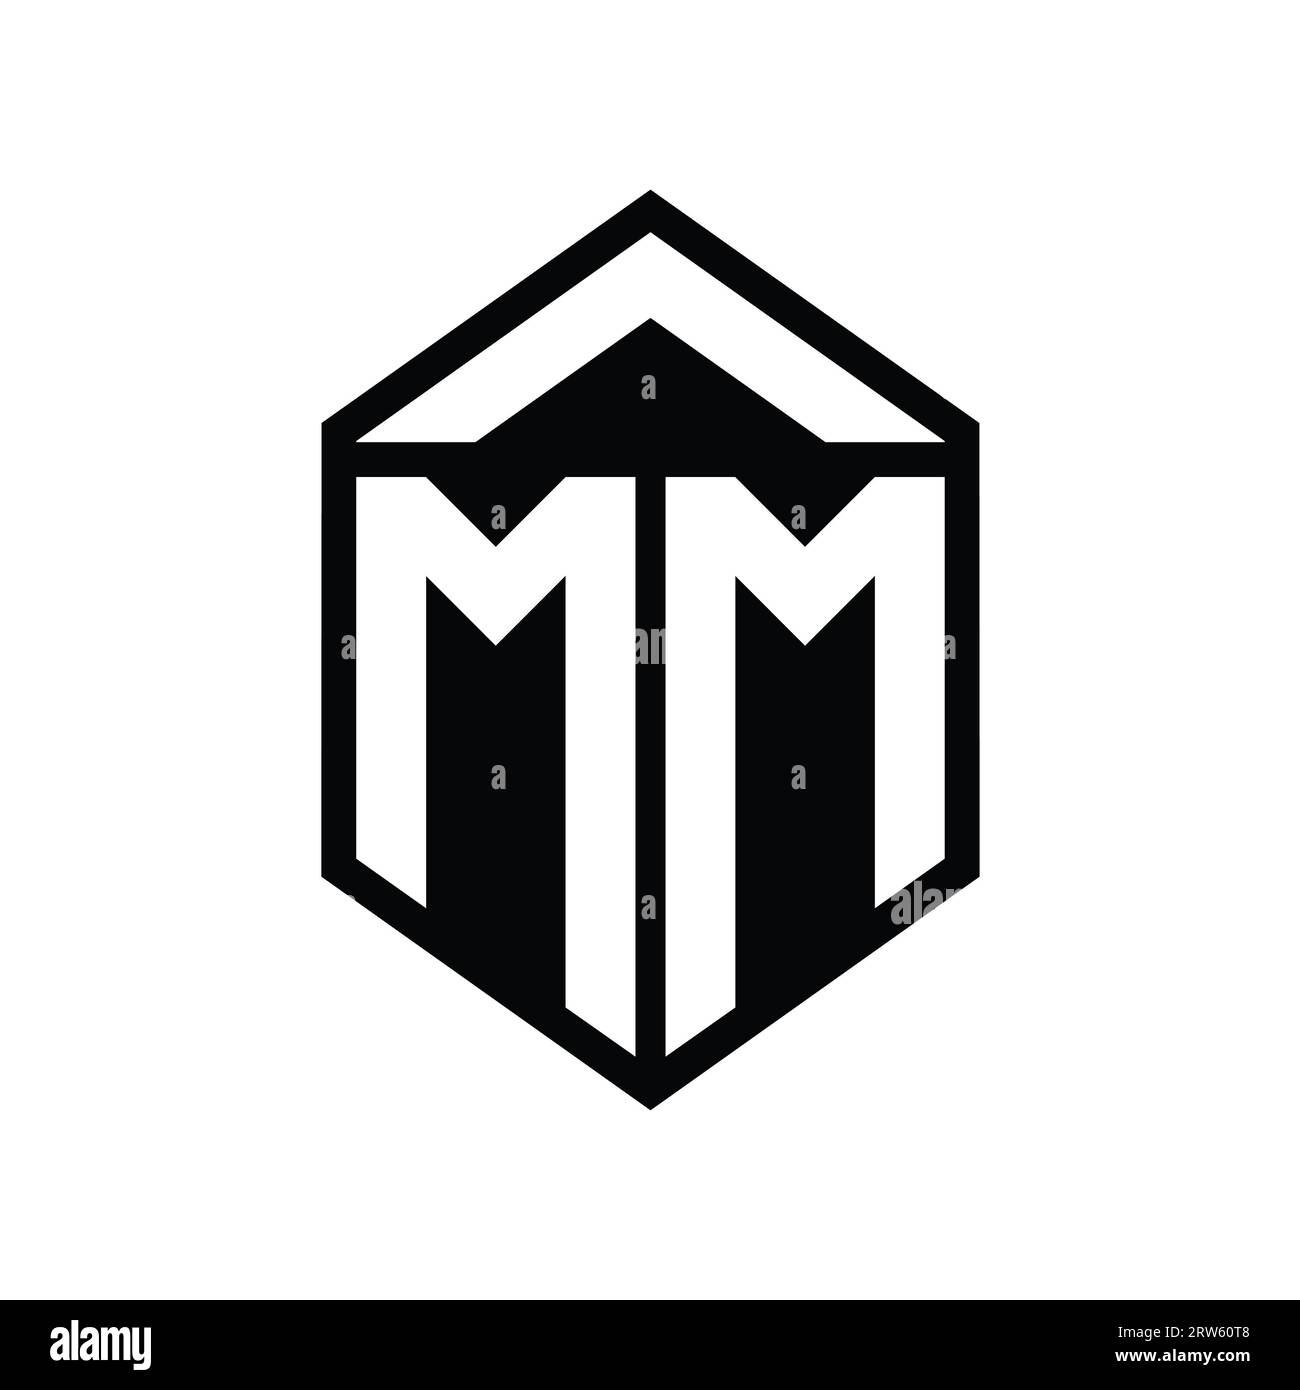 Mm logo monogram with emblem shield shape design Vector Image